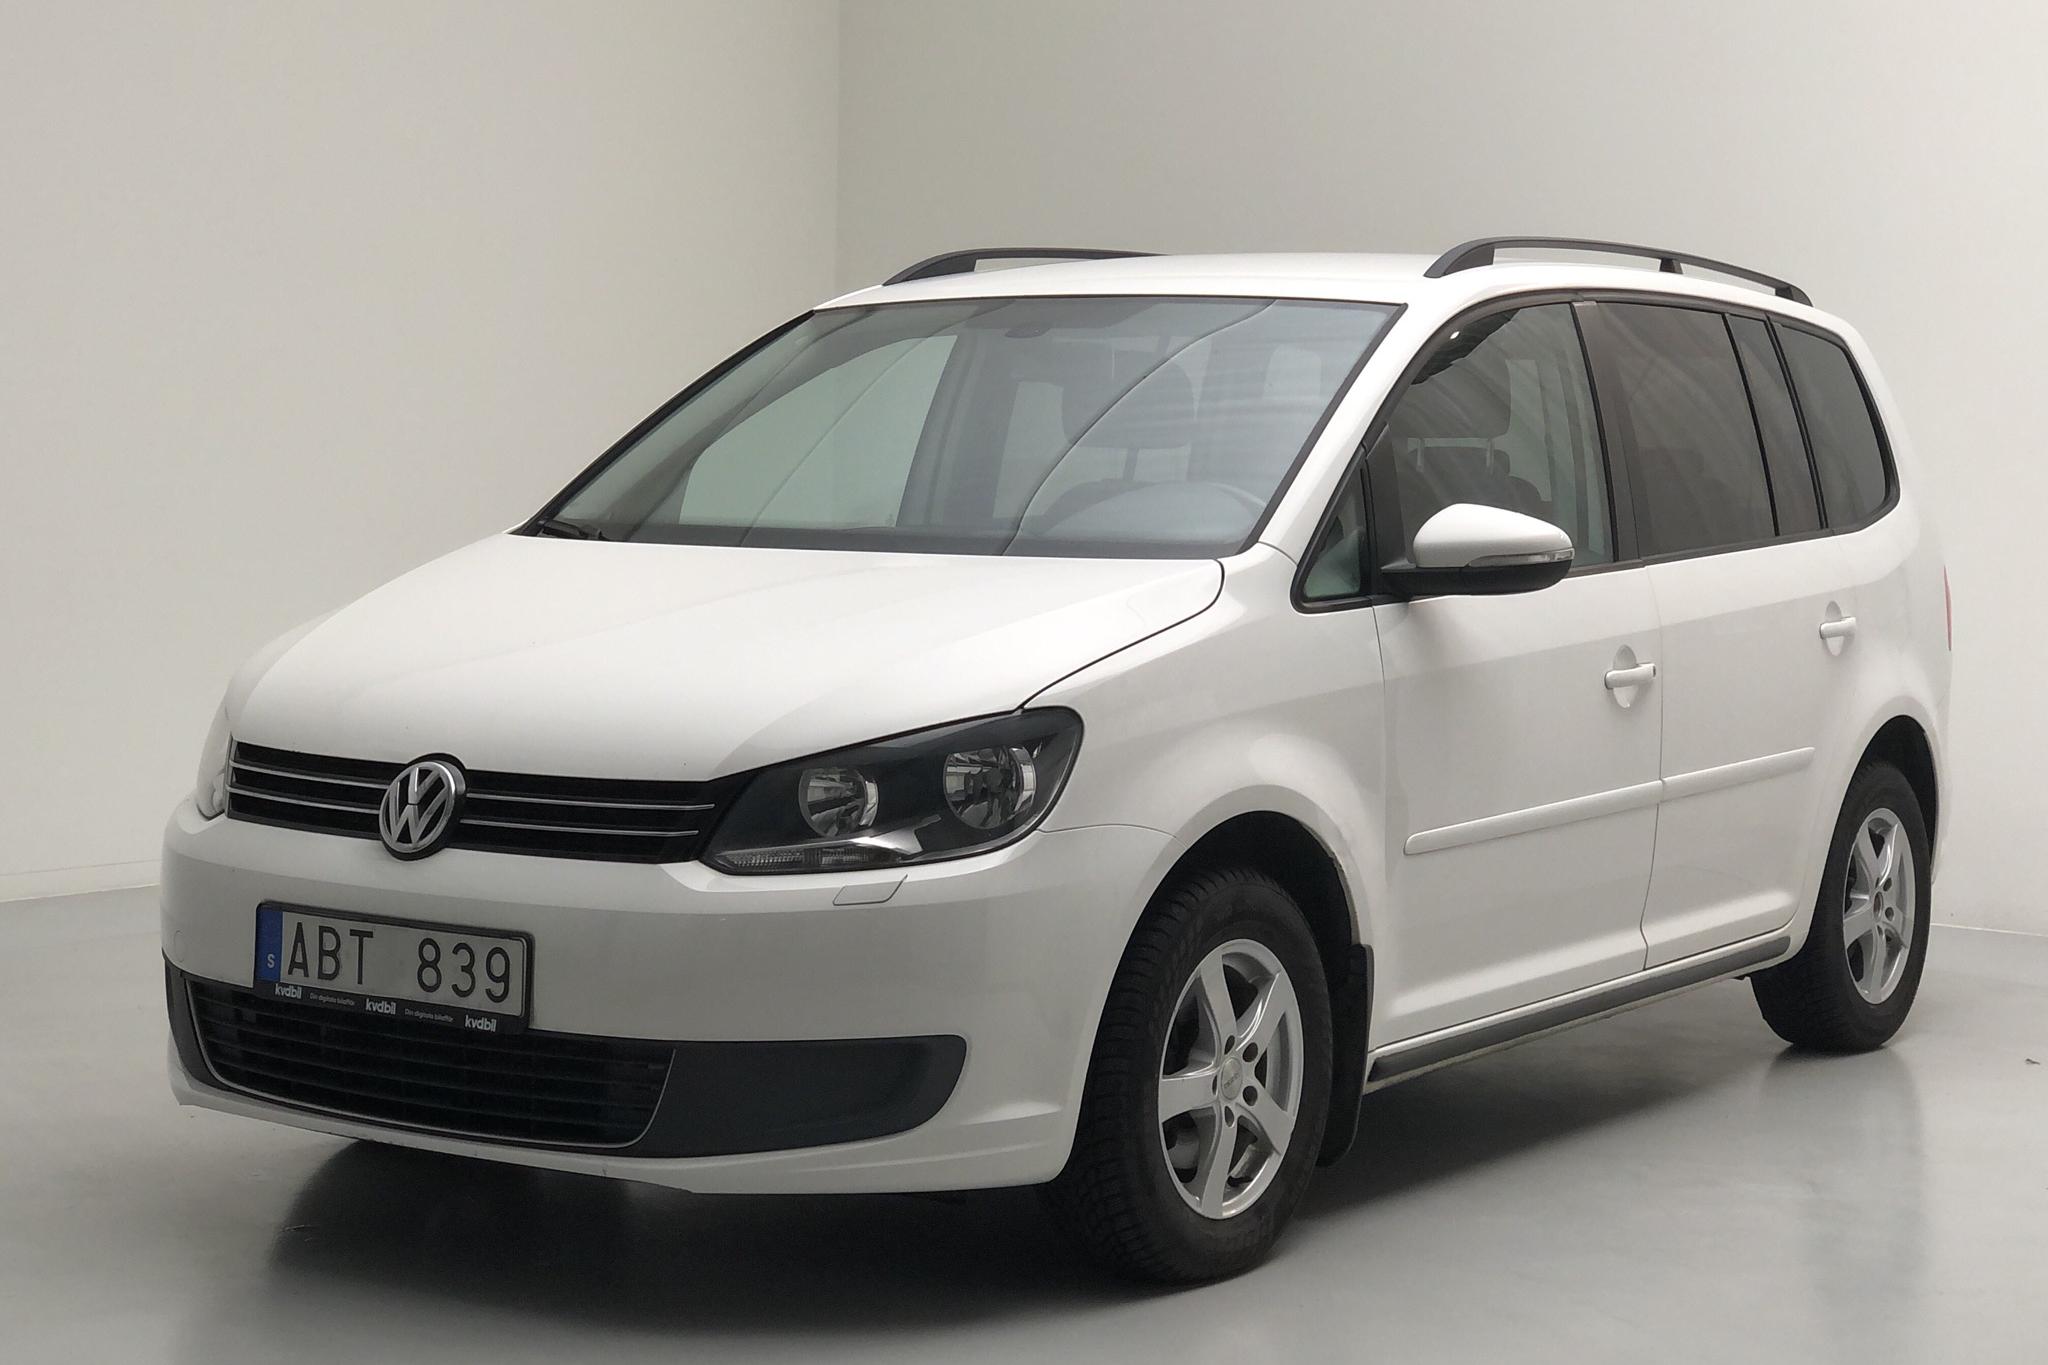 VW Touran 1.6 TDI BlueMotion Technology (105hk) - 236 660 km - Manual - white - 2013